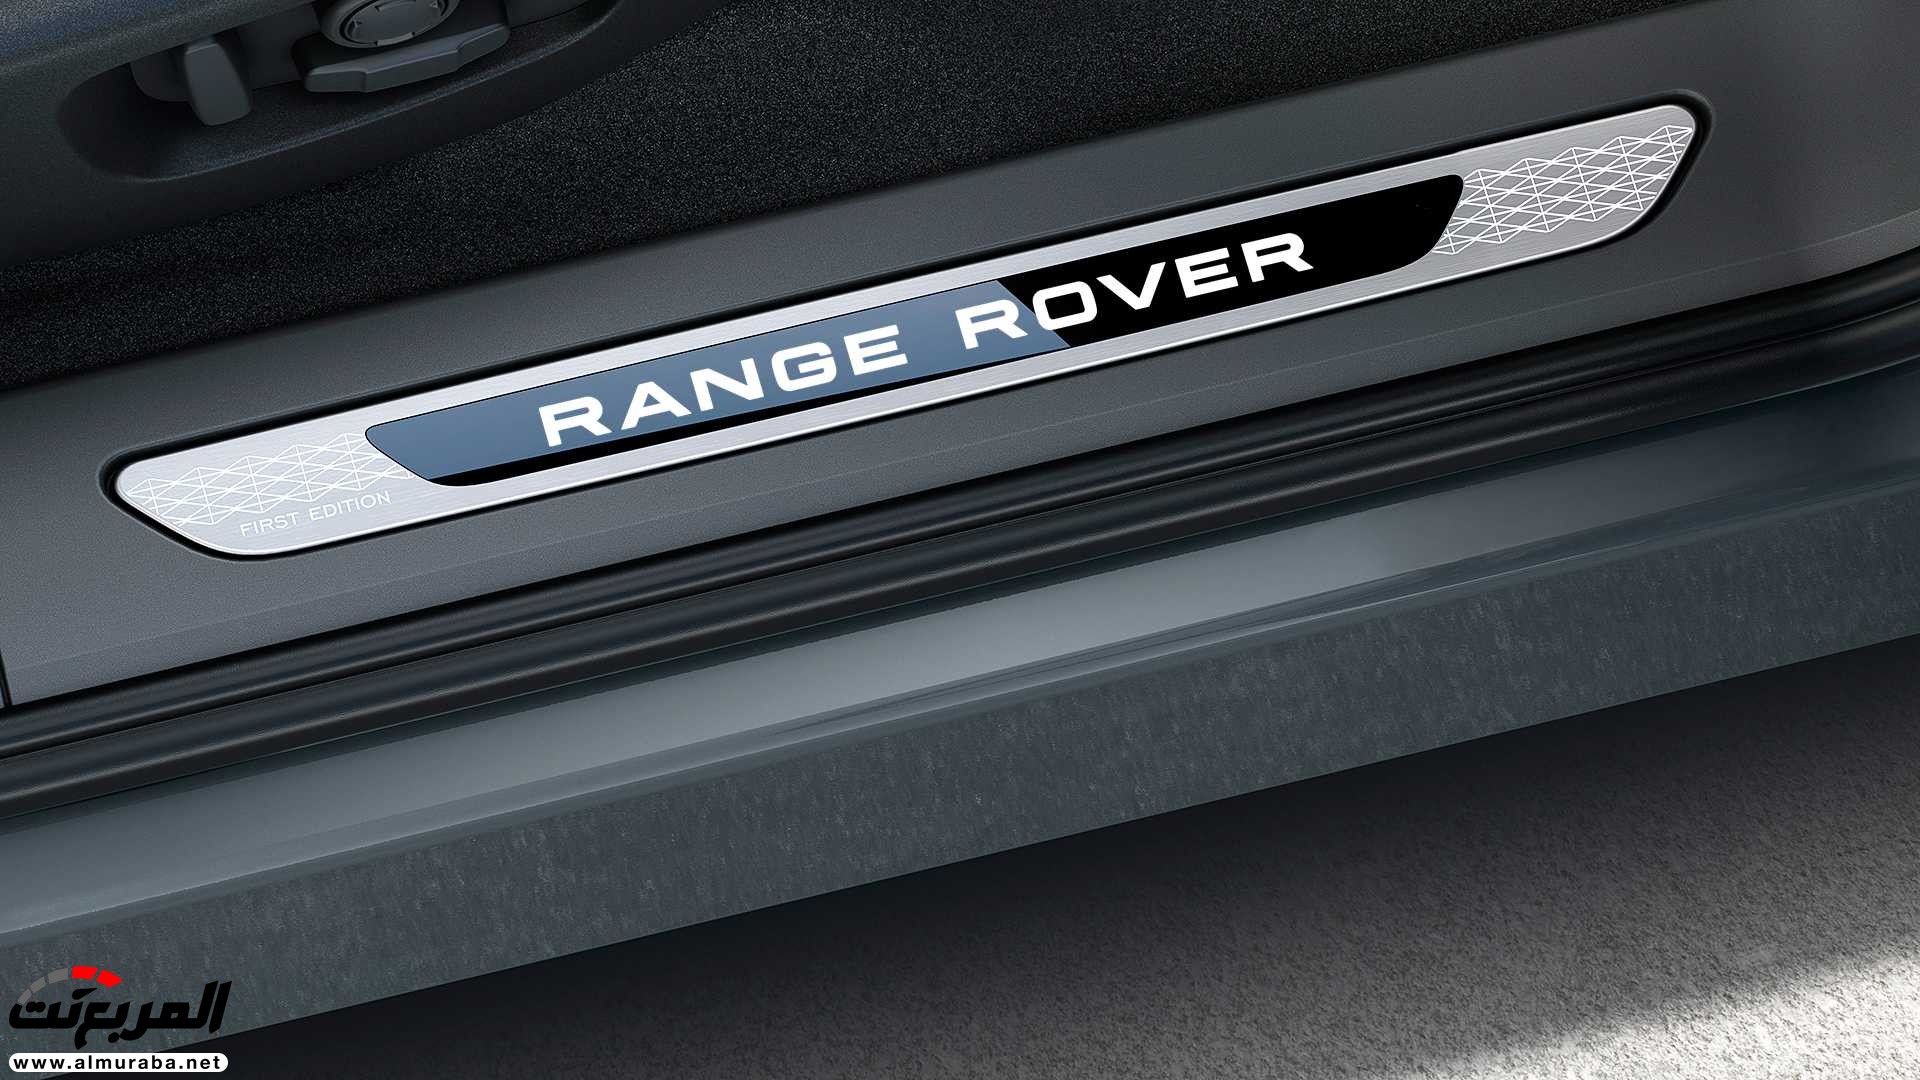 اهم 7 معلومات عن رنج روفر ايفوك 2020 الجديدة كلياً Range Rover Evoque 66